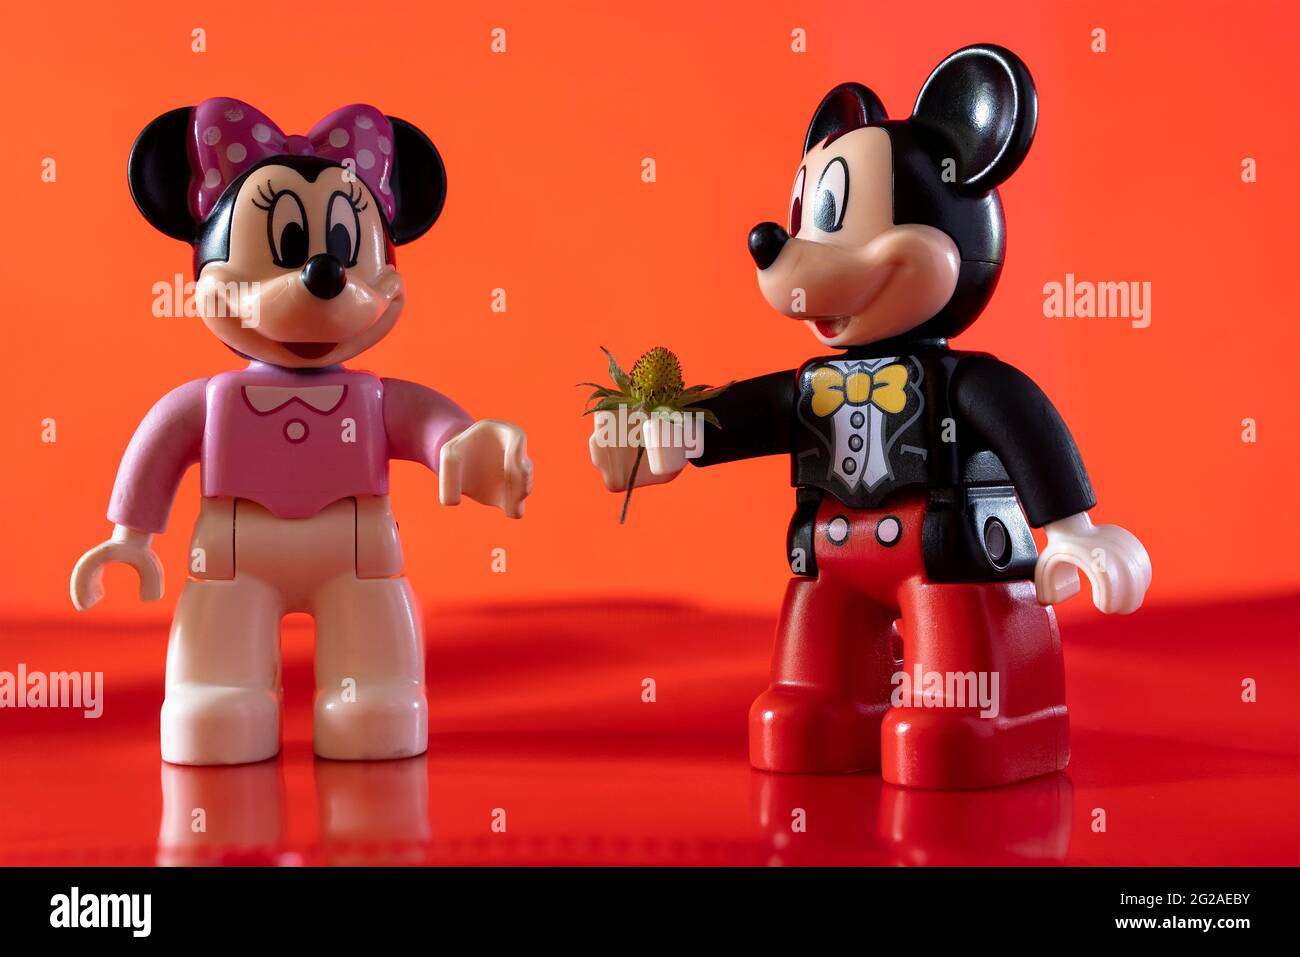 New York, États-Unis - 25 mai 2021 : gros plan d'un personnage miniature de Disney célèbre Mickey Mouse Disney qui distribue une fleur à Minnie mou Banque D'Images